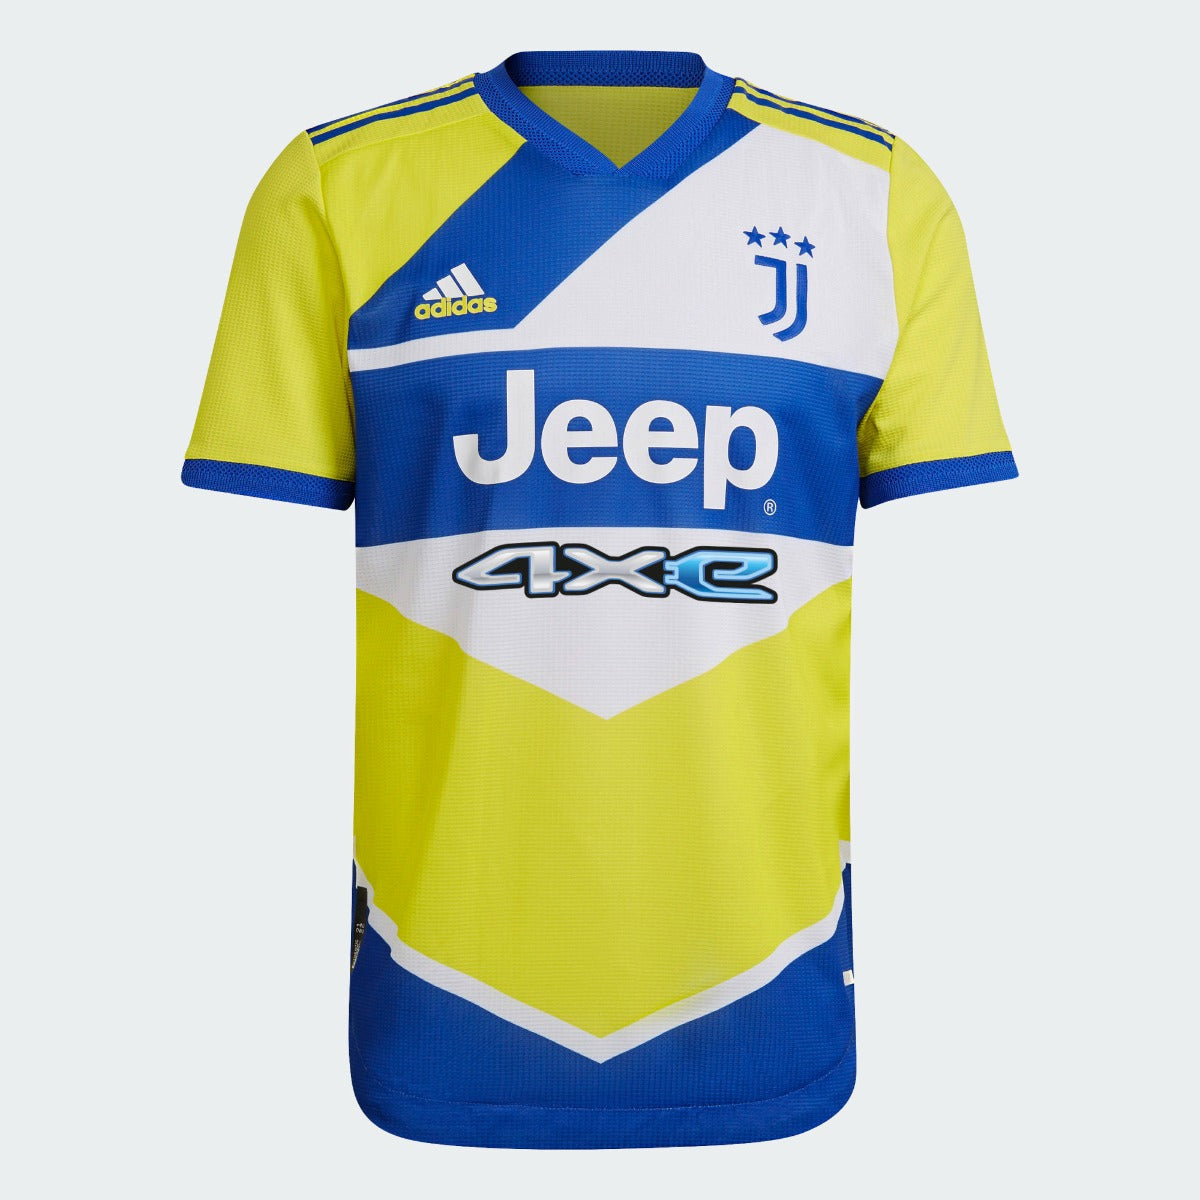 Adidas, Terza maglia autentica della Juventus Adidas 2021-22 - Giallo-Real-Bianco